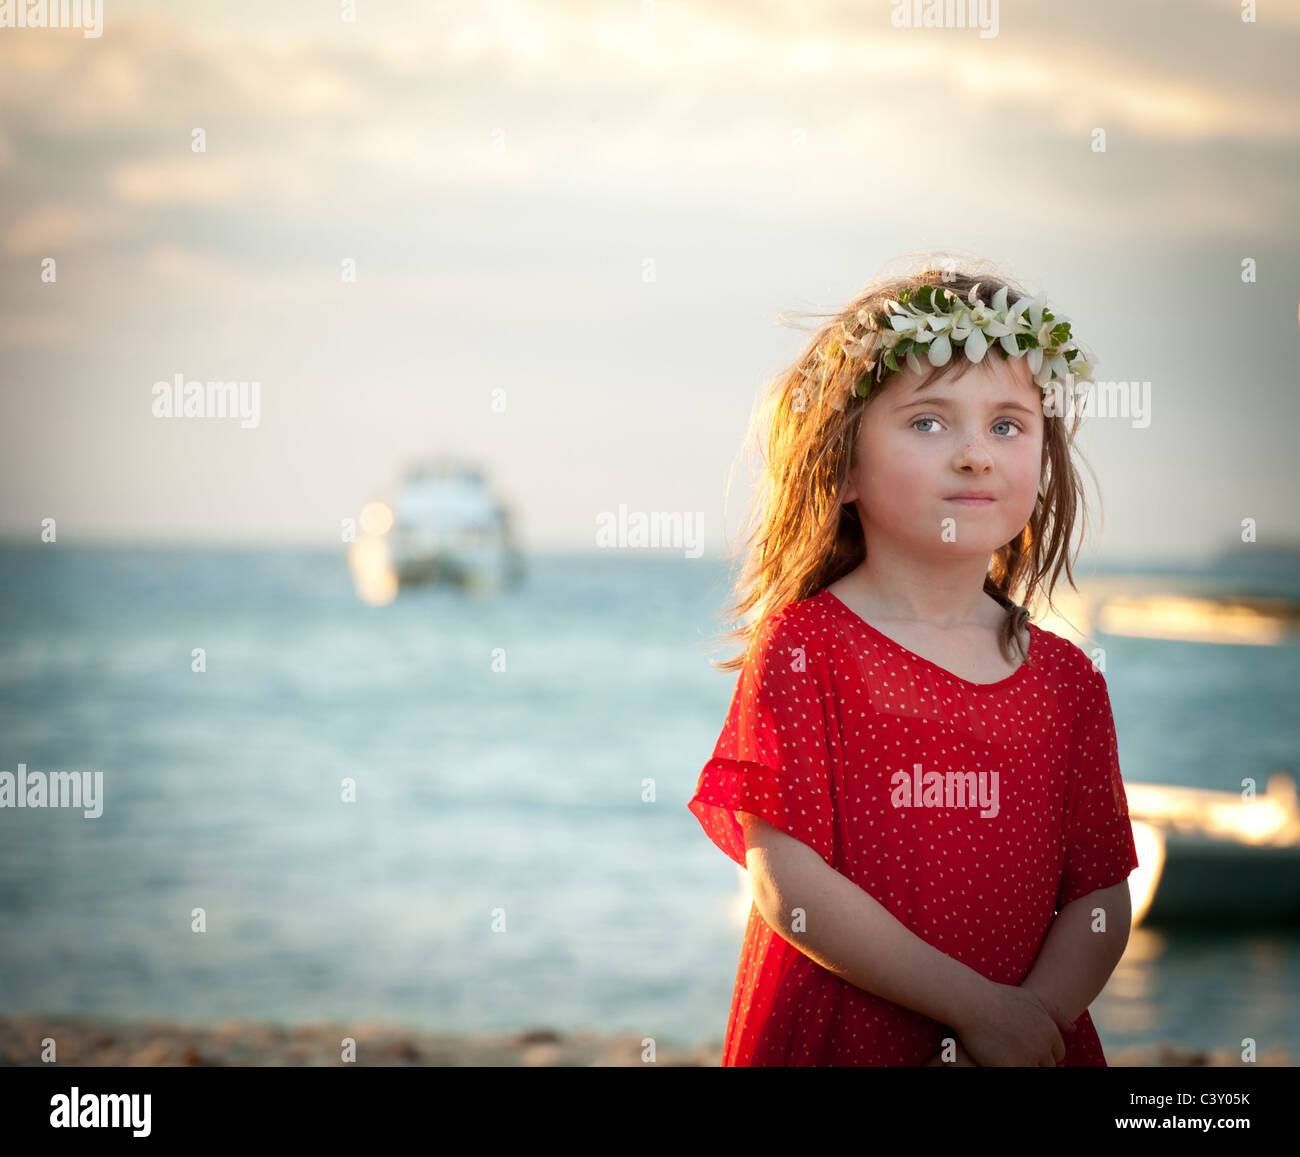 kleines Mädchen mit Blumen in ihrem Haar und roten Kleid Blick unschuldig  aus in Ferne Stockfotografie - Alamy